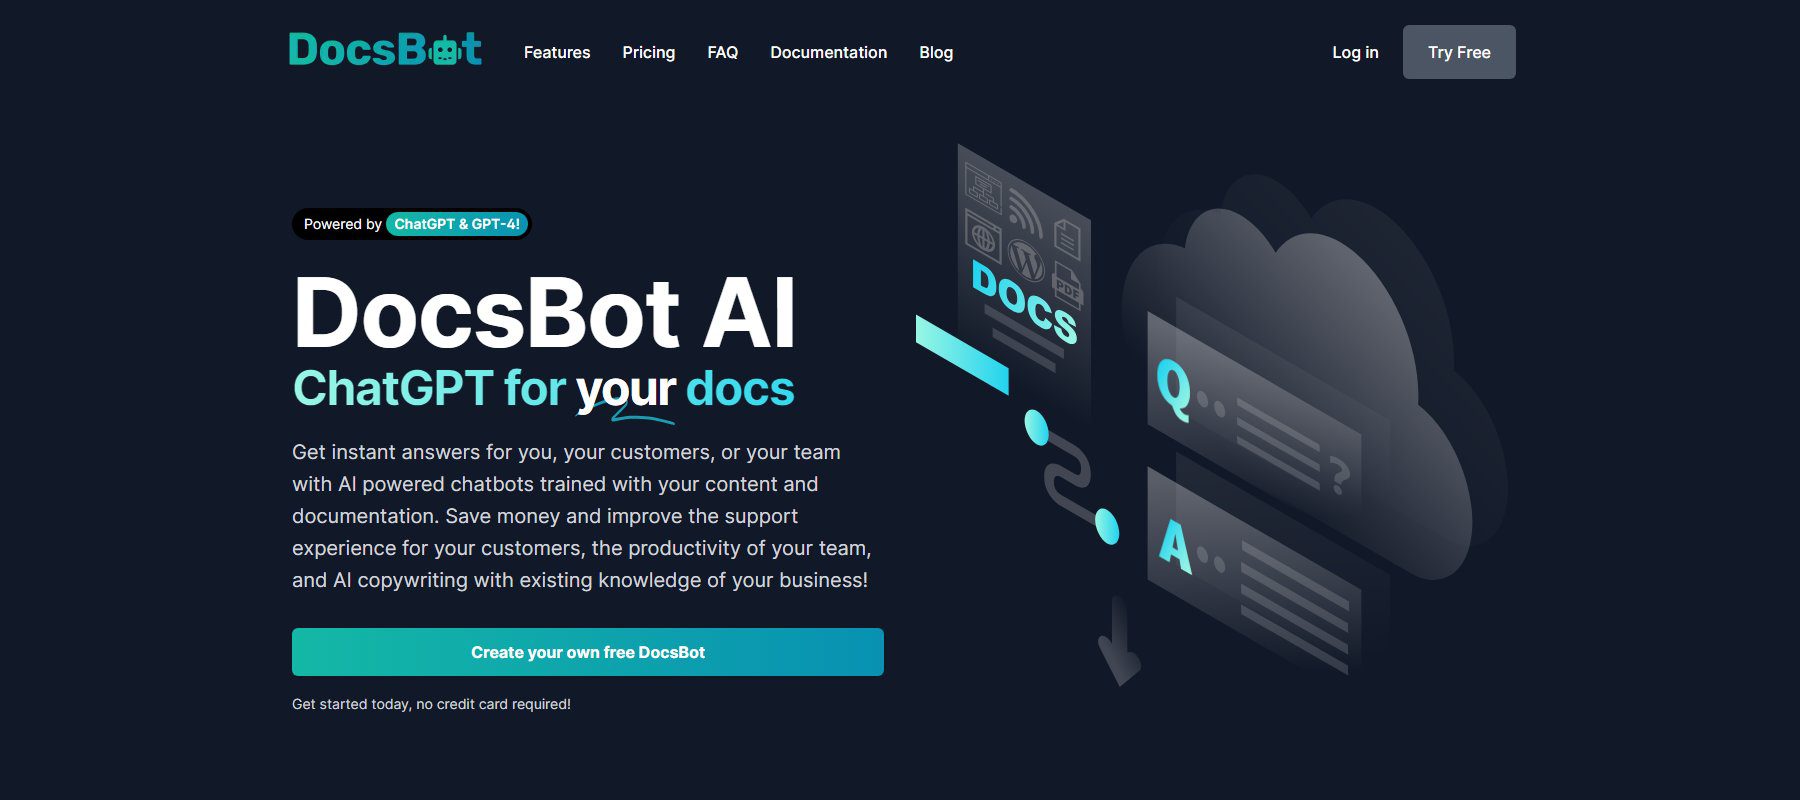 Docsbot AI 聊天機器人 - 首頁